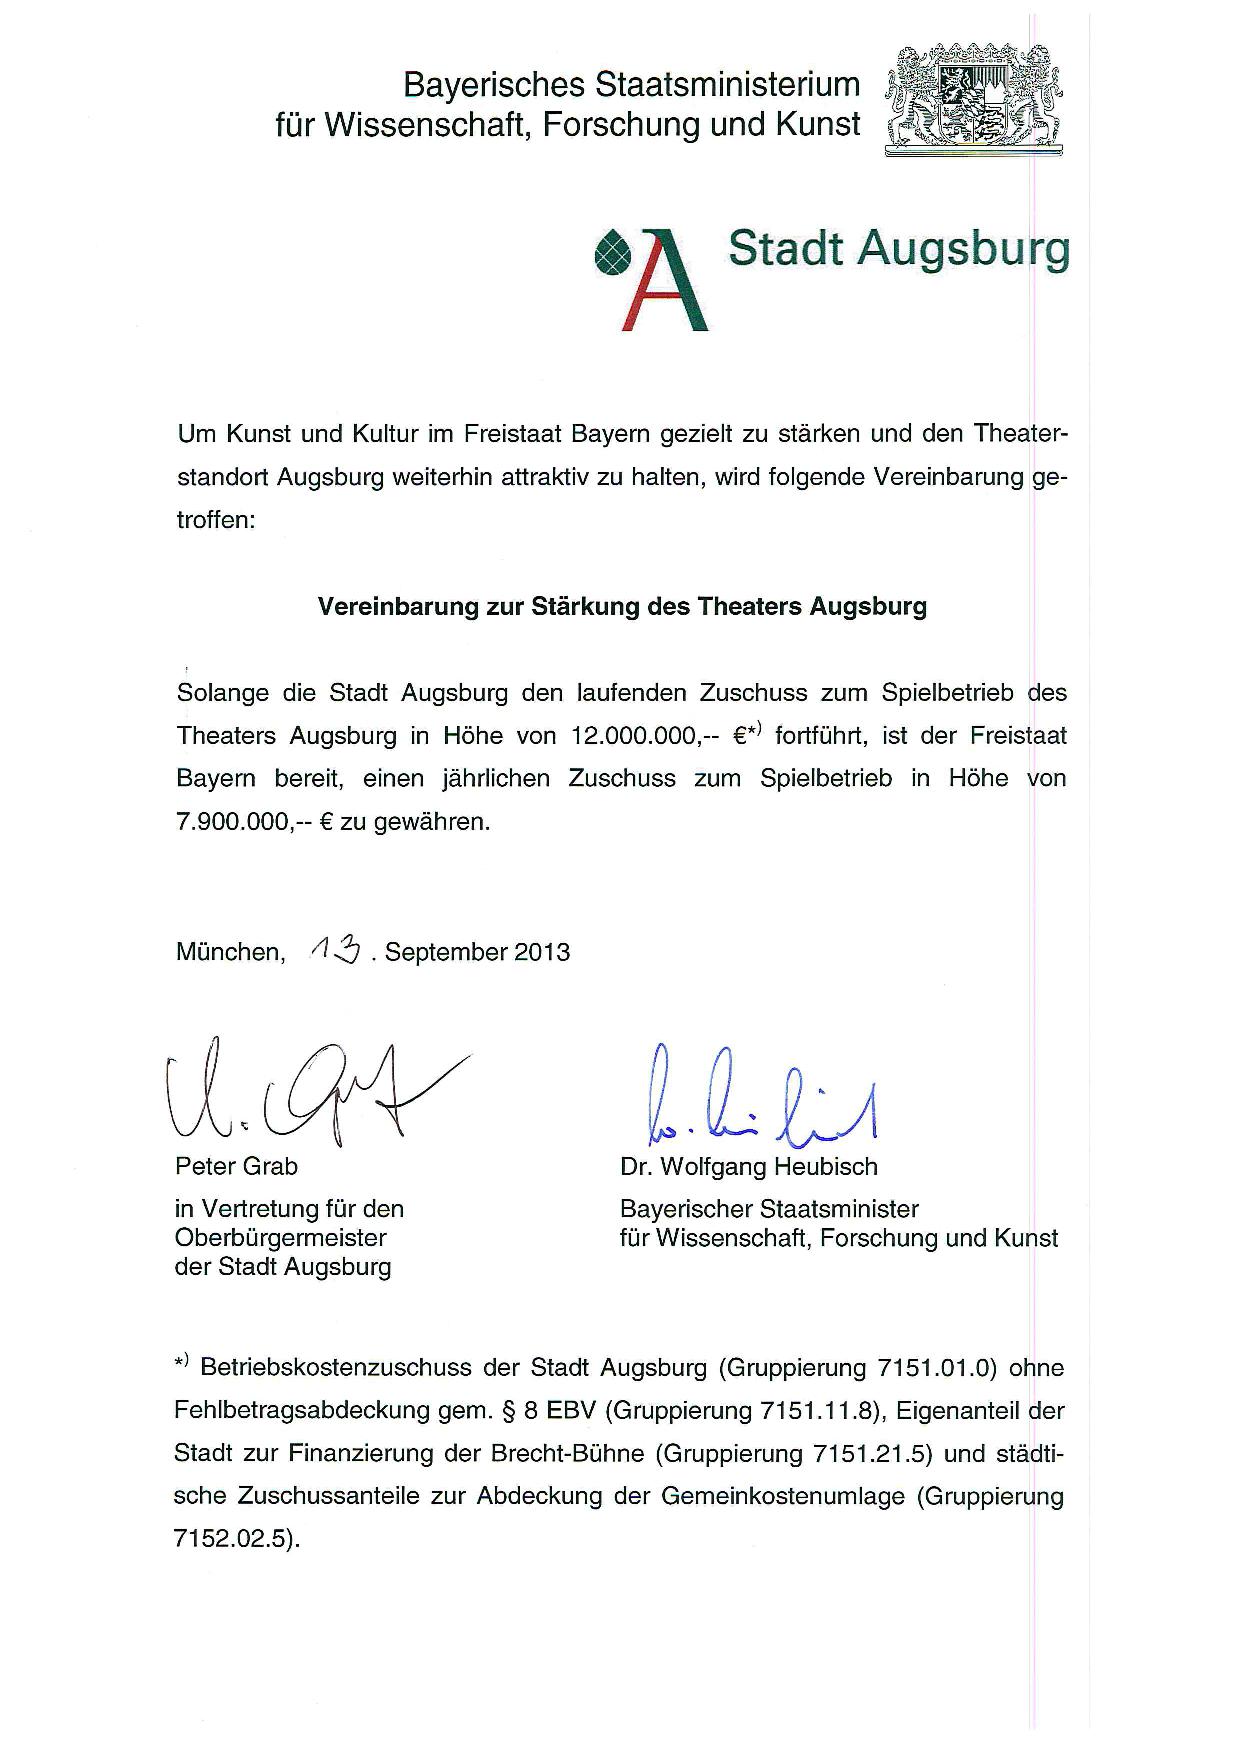 Vereinbarung zur Stärkung des Theaters Augsburg